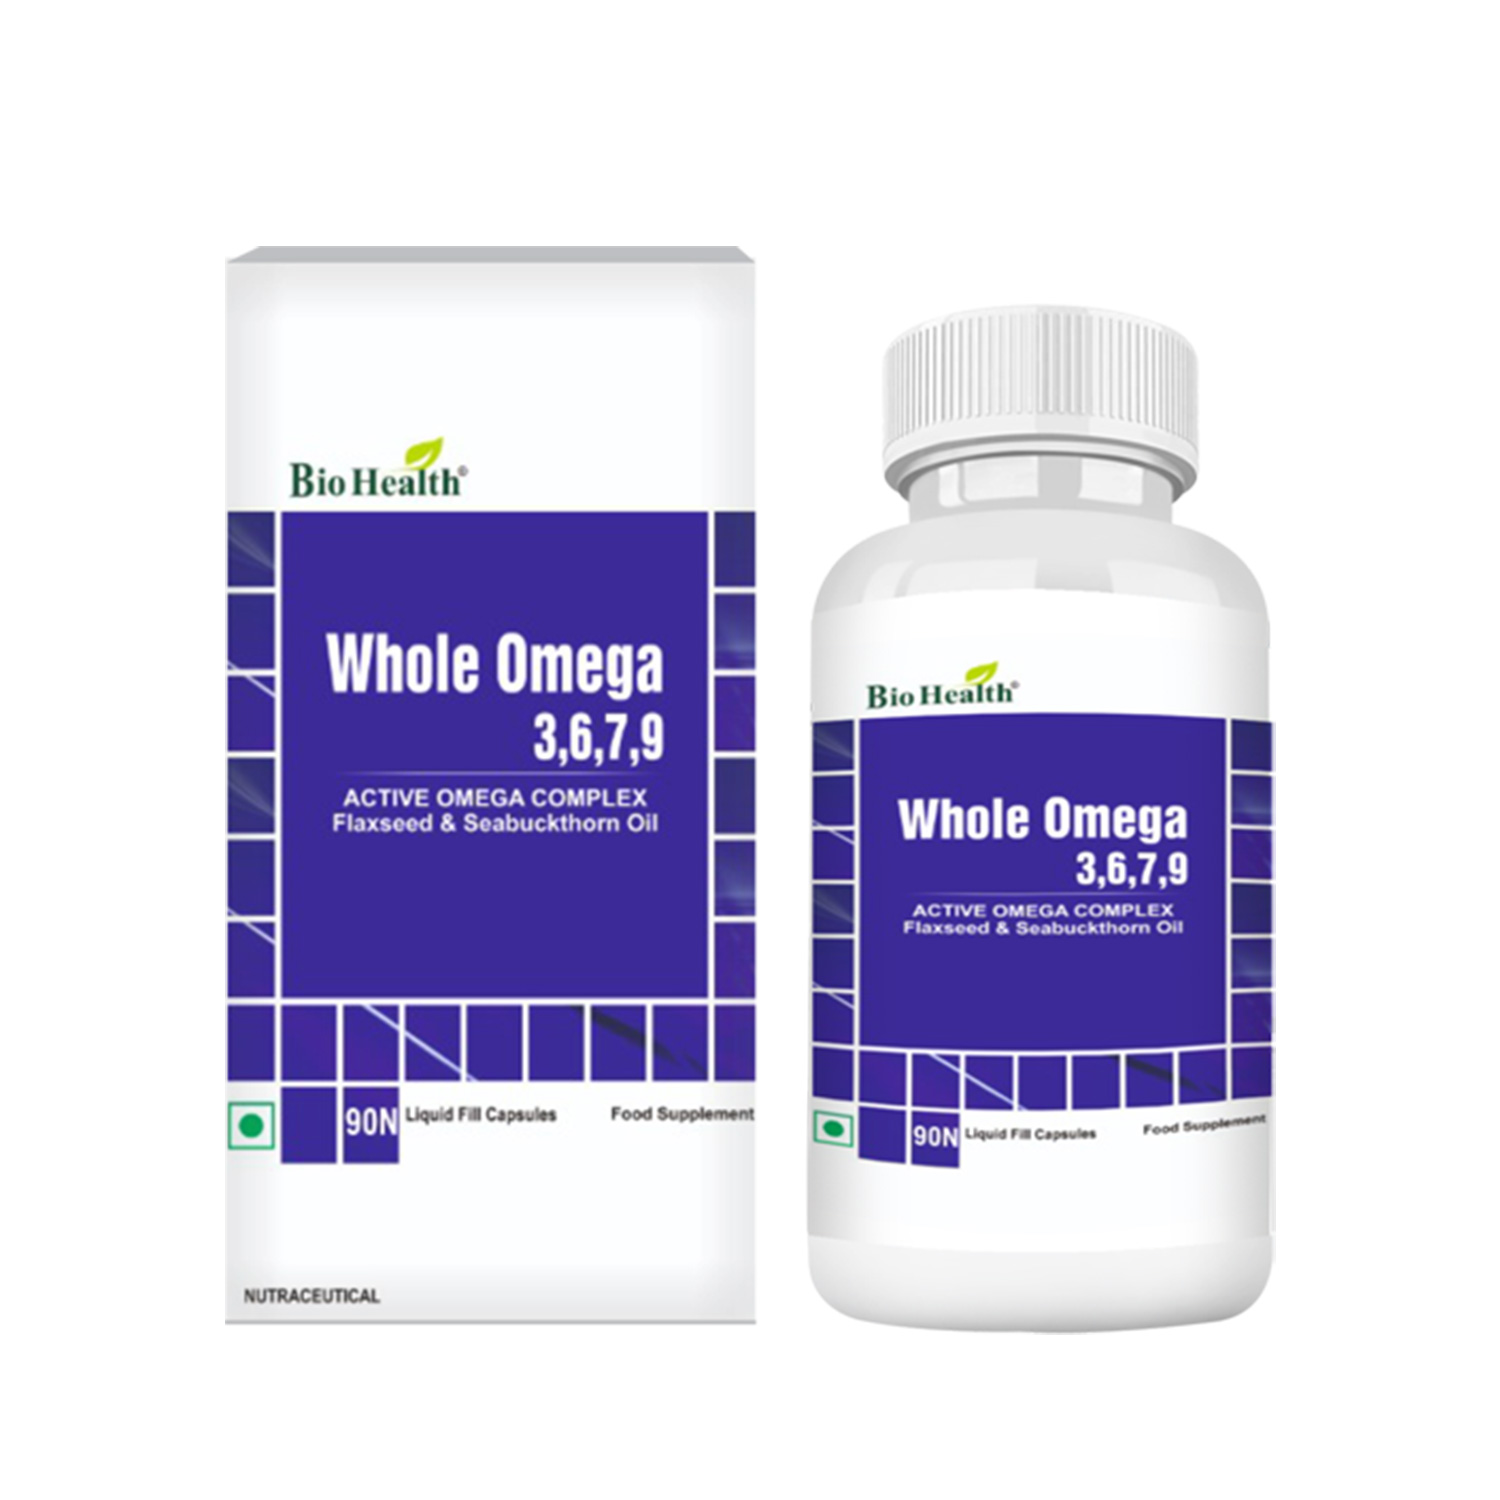 Bio Health Whole Omega 3,6,7,9 90 Tab